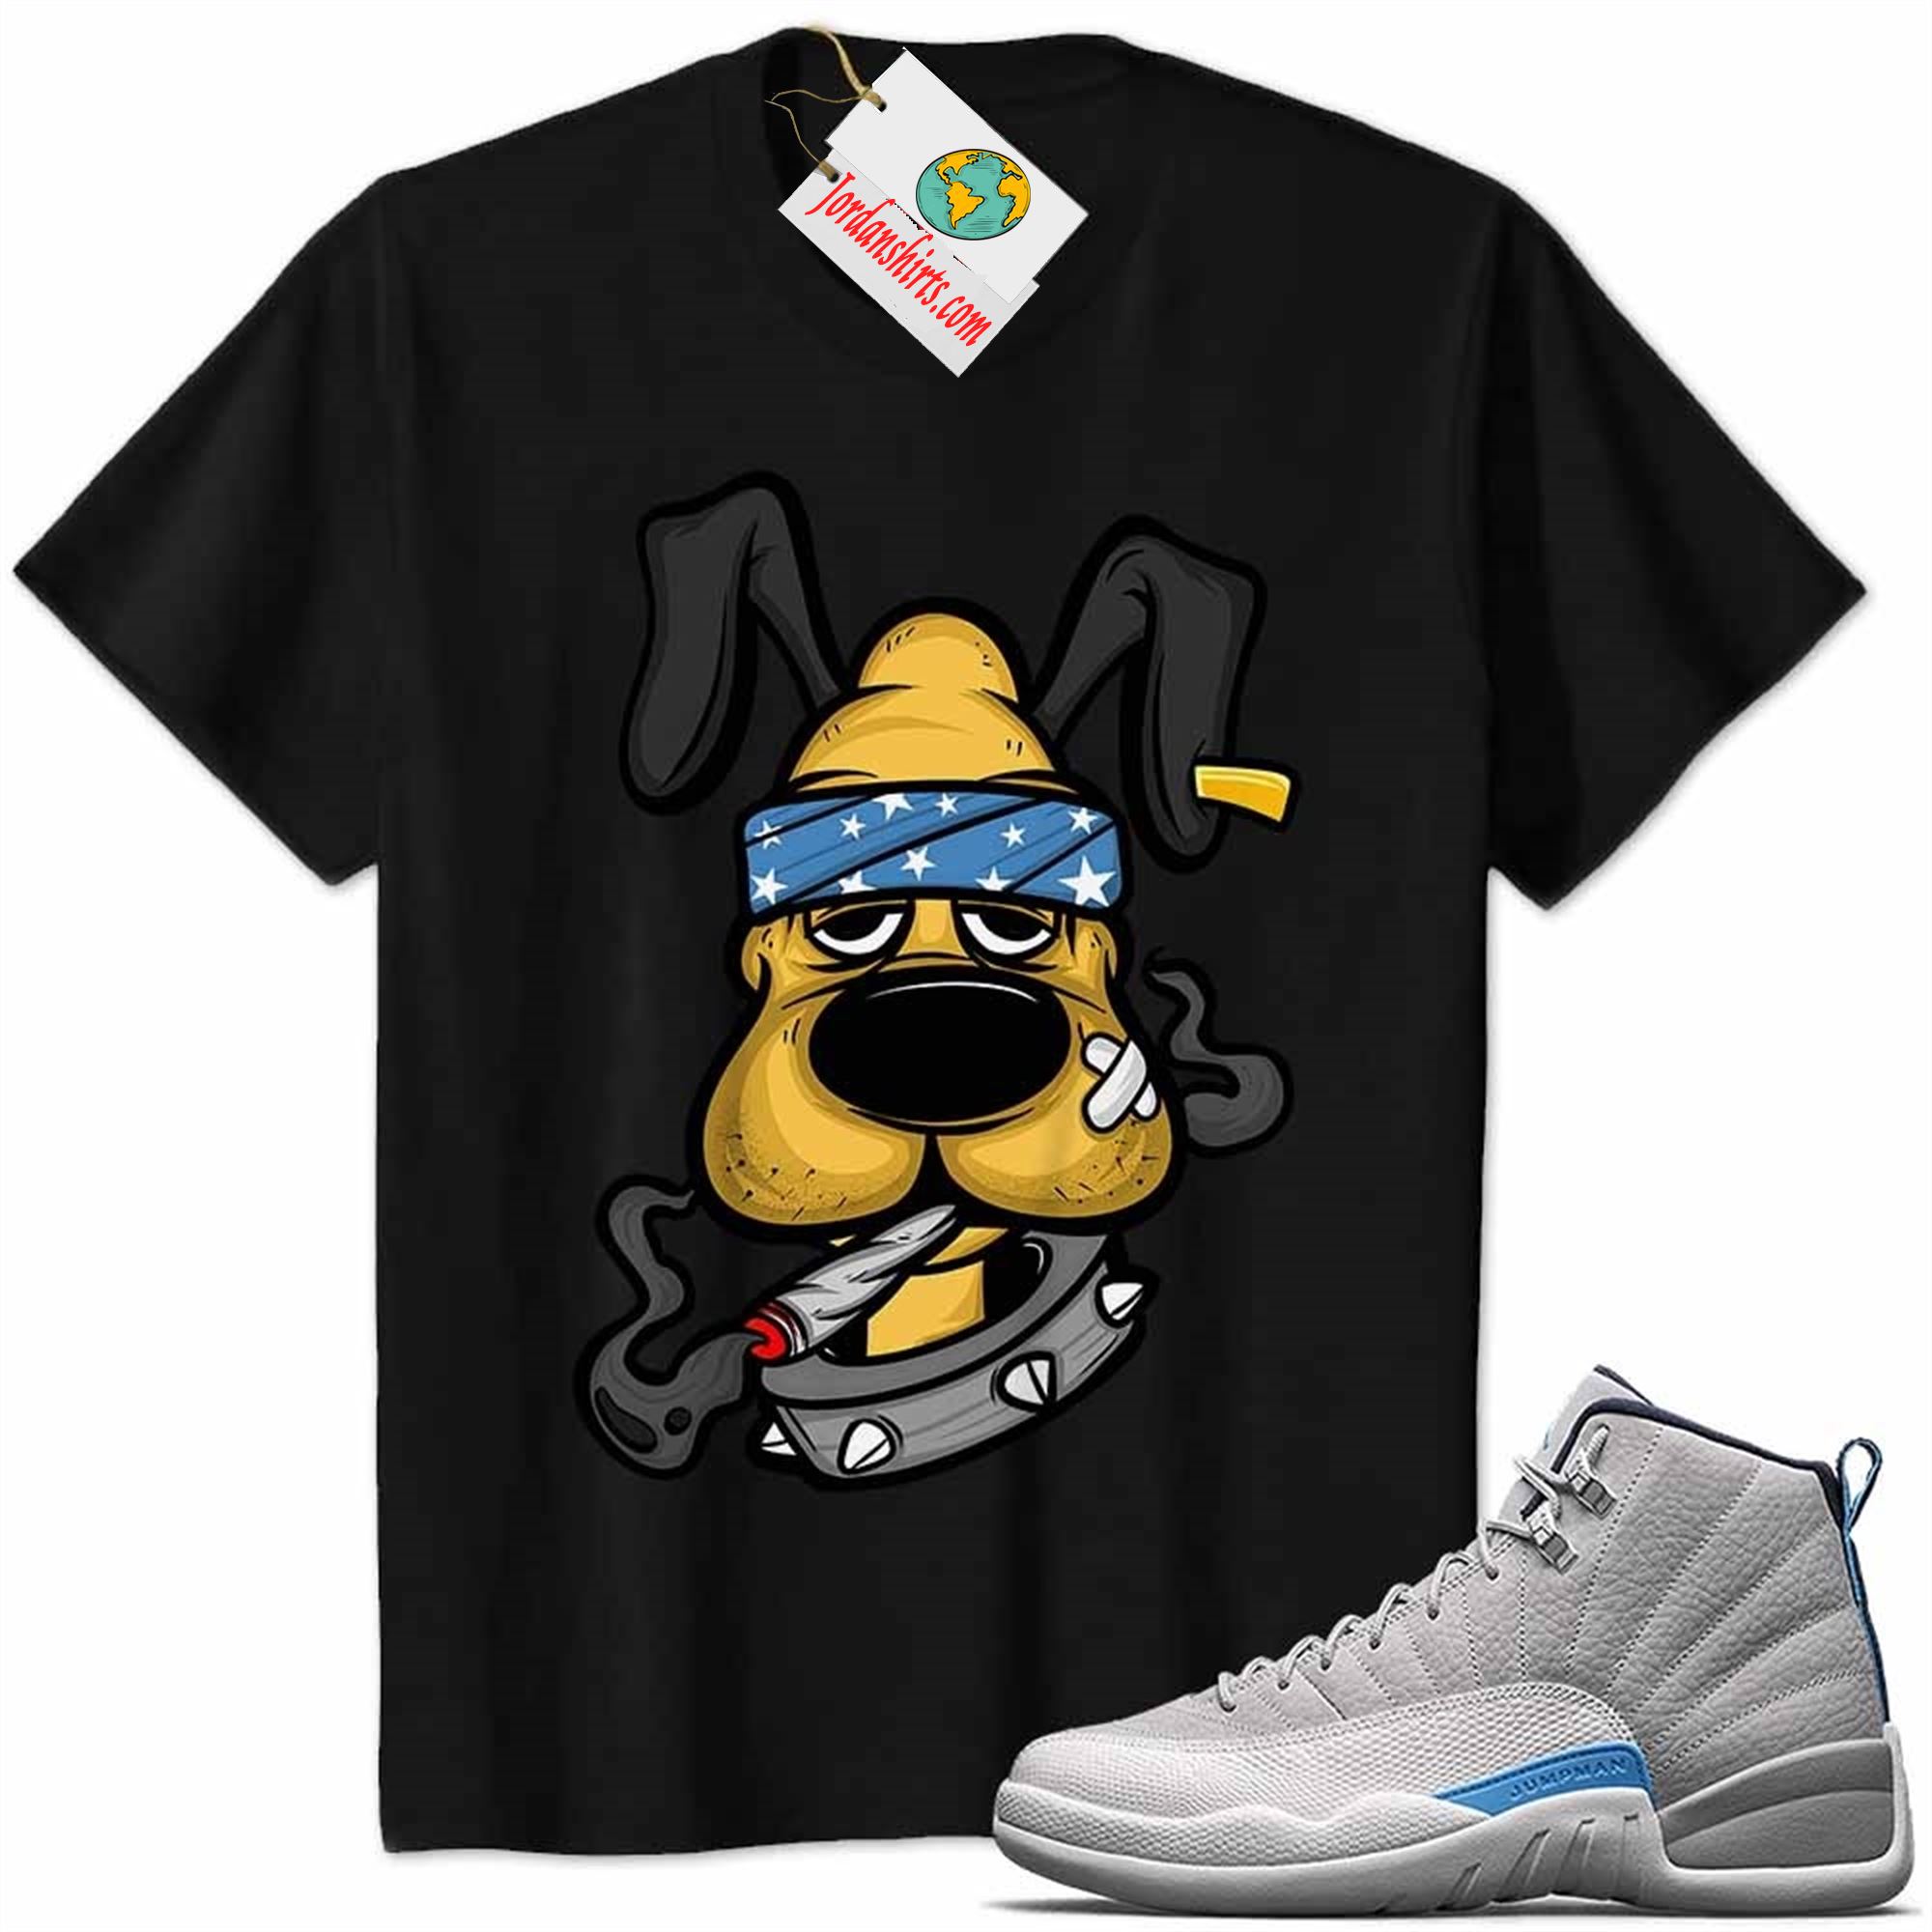 Jordan 12 Shirt, Gangster Pluto Smoke Weed Black Air Jordan 12 Wolf Grey 12s Full Size Up To 5xl